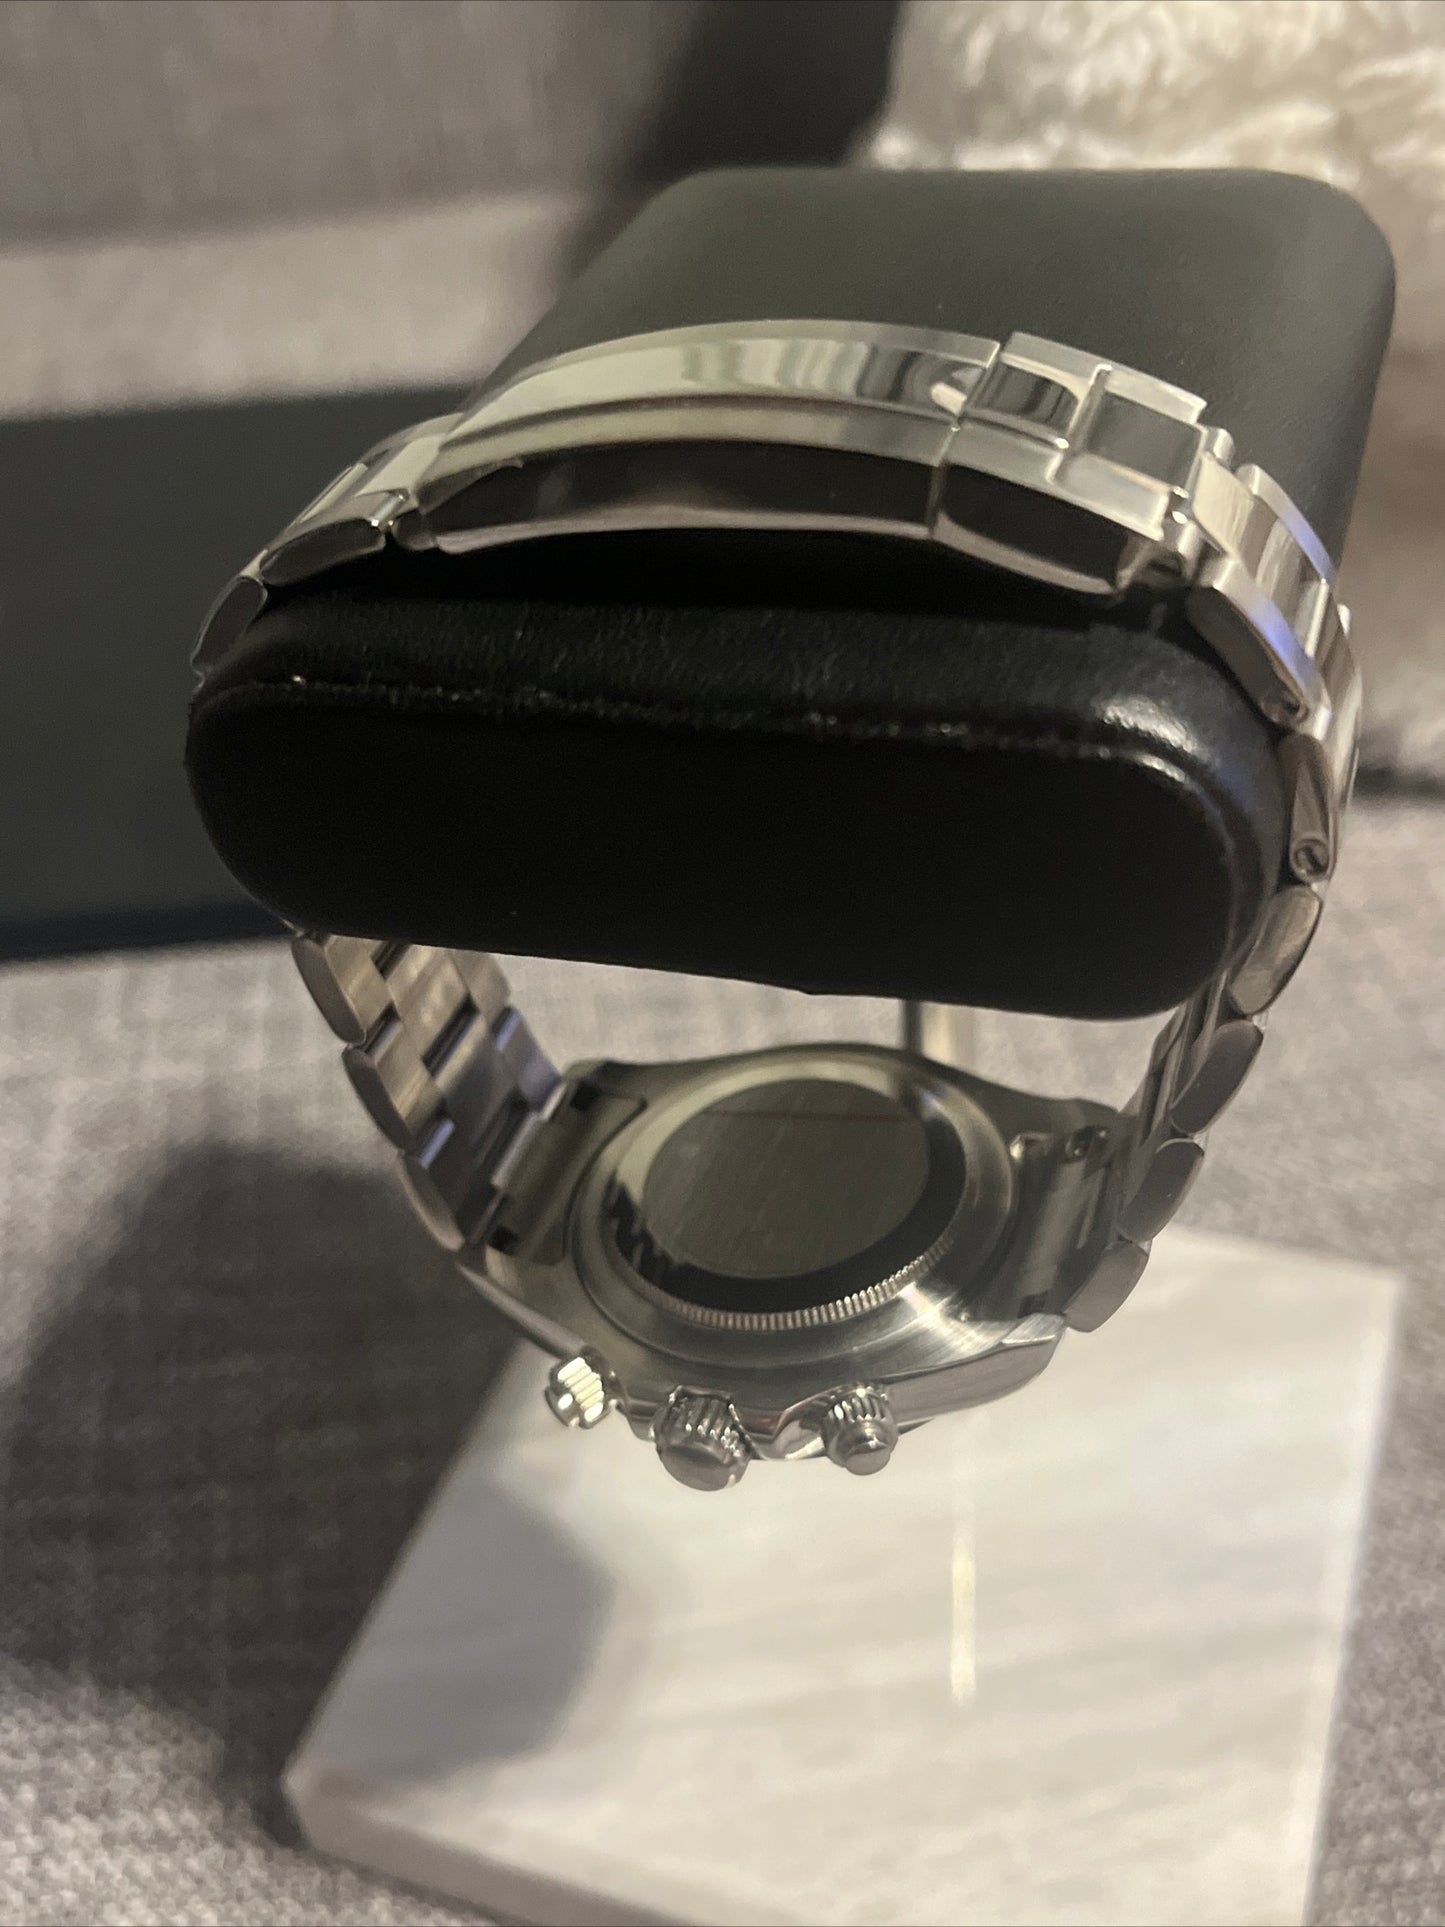 Custom build seiko seitona VK63 meca-quartz chronograph watch - black mod Daytona